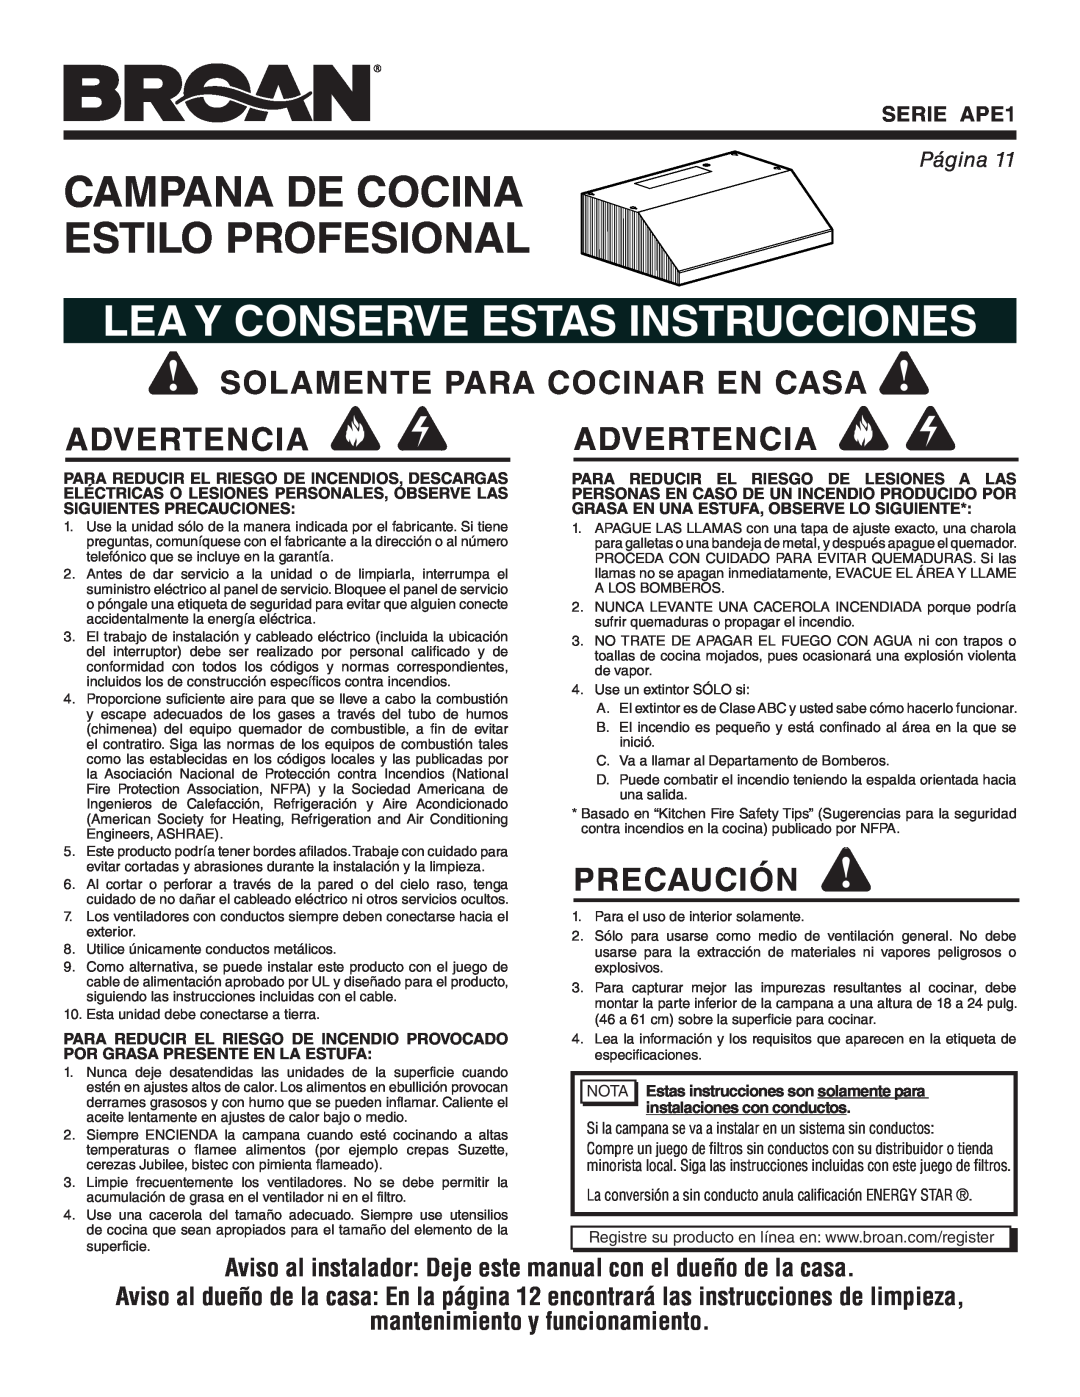 Broan warranty Campana De Cocina Estilo Profesional, Lea Y Conserve Estas Instrucciones, Precaución, SERIE APE1, Página 